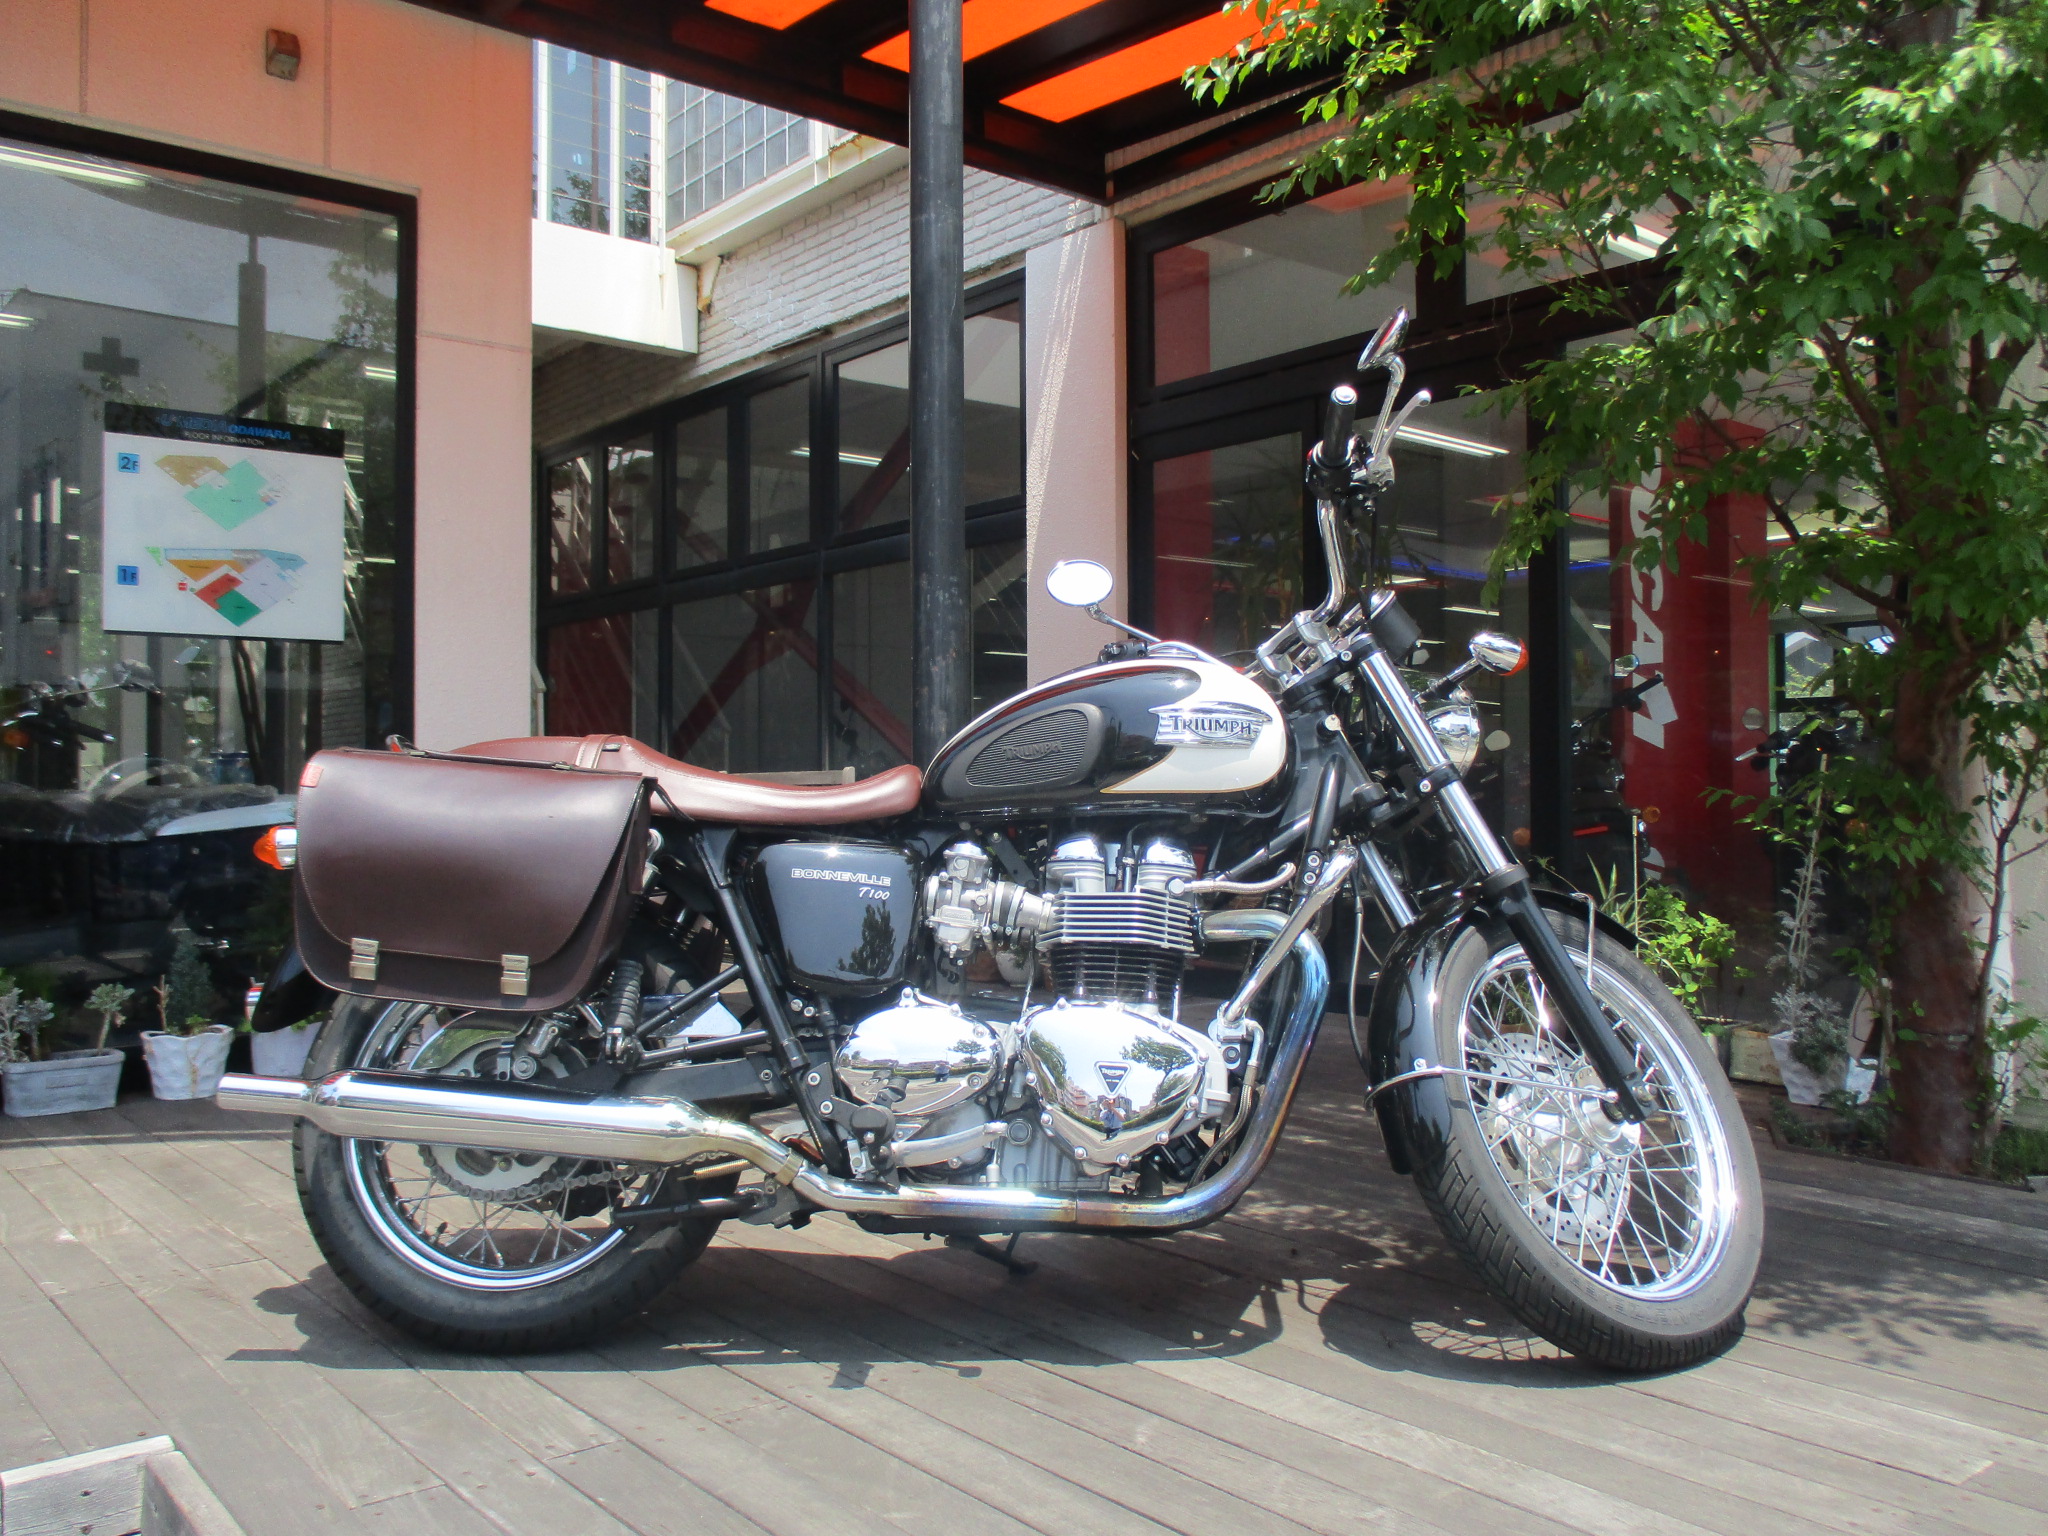 トライアンフの中古車をご紹介します 最新情報 U Media ユーメディア 中古 バイク 新車バイク探しの決定版 神奈川 東京でバイク探すならユーメディア